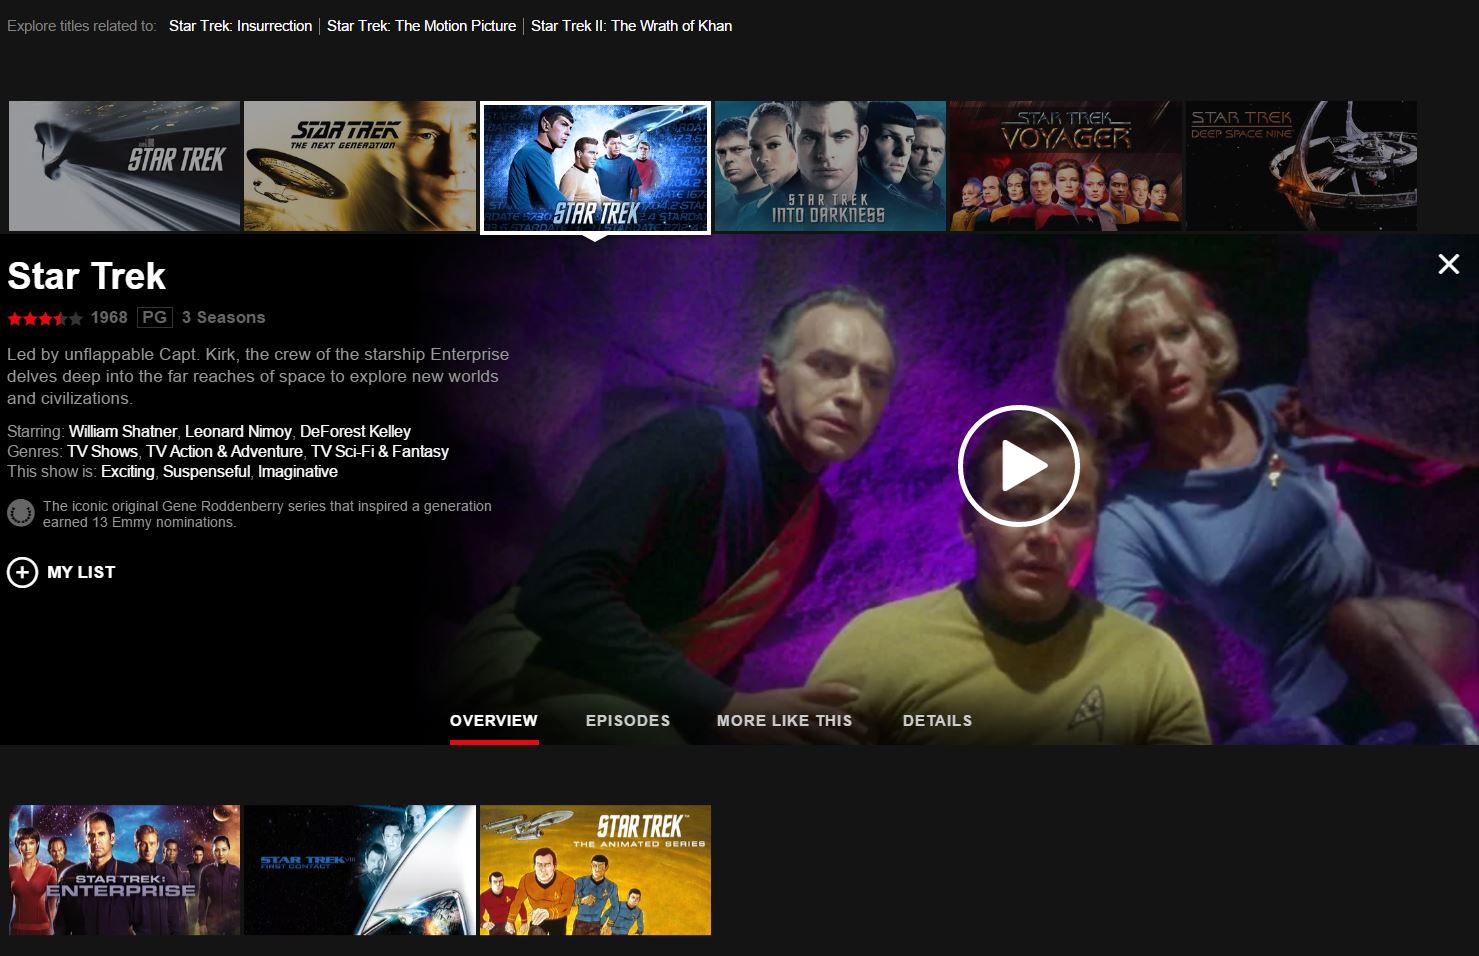 New Star Trek TV series arrives on Netflix in 2017 - Techgoondu